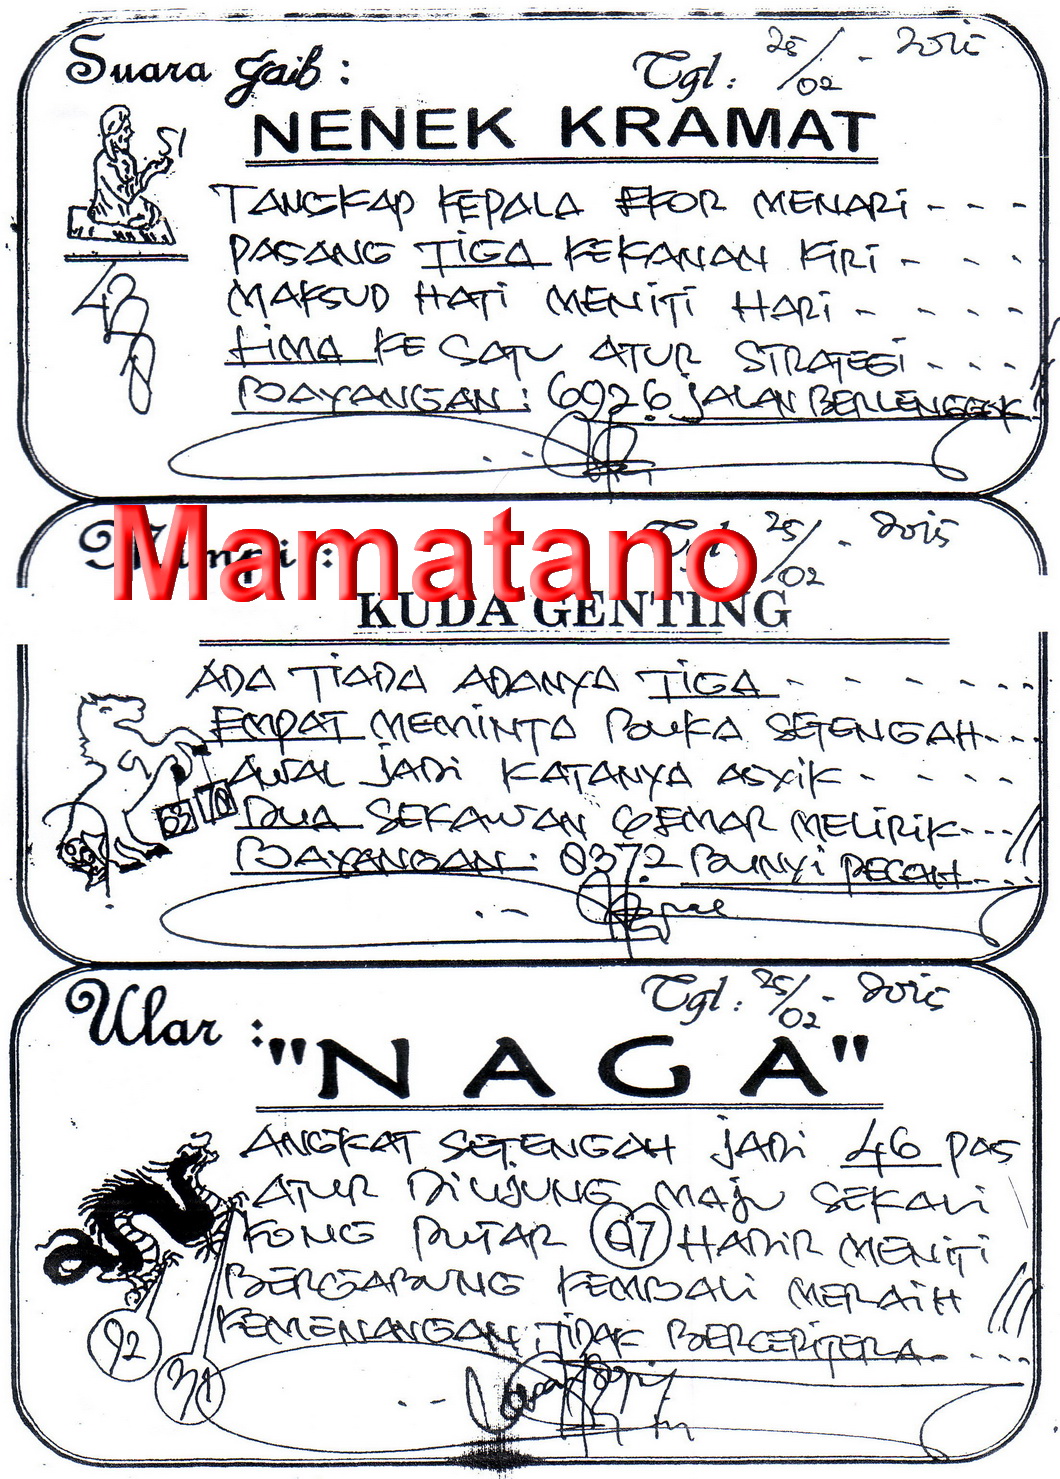 https://mamatano.files.wordpress.com/2015/02/nenek-kramat-25-02-2015.jpg